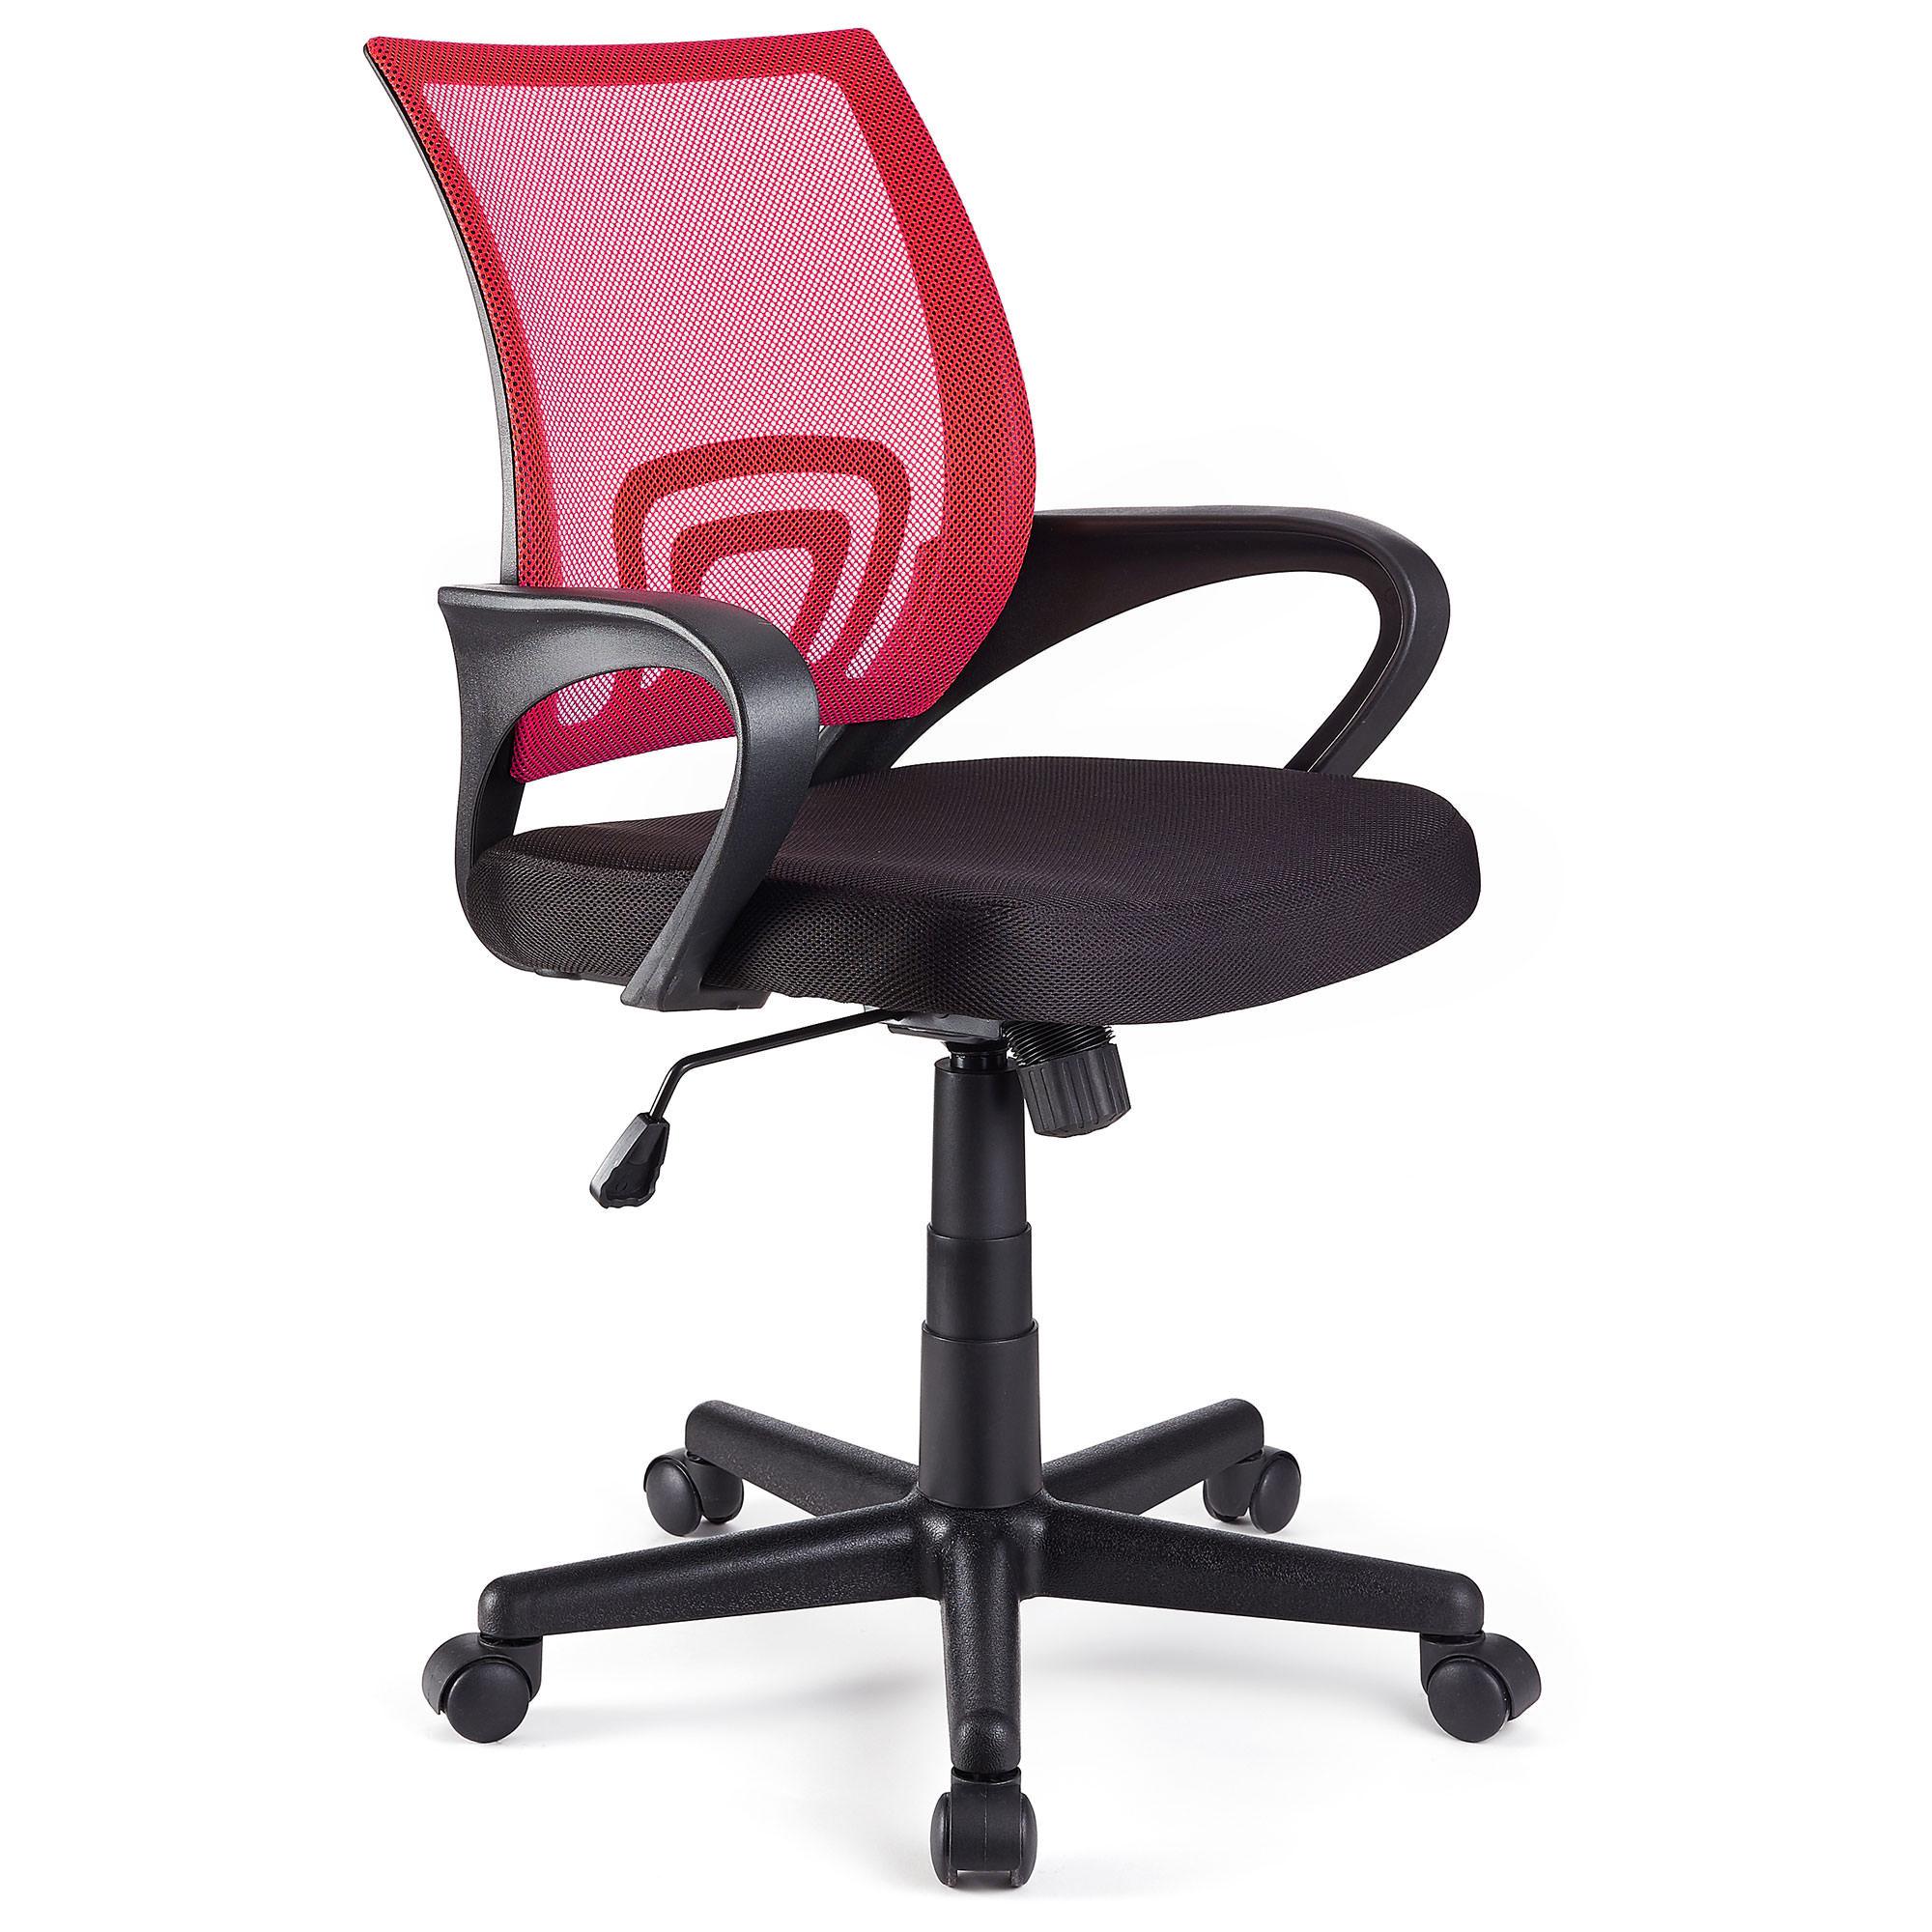 Cadeira de Escritório SEUL, Design Atractivo, Assento Acolchoado, Cor Vermelho